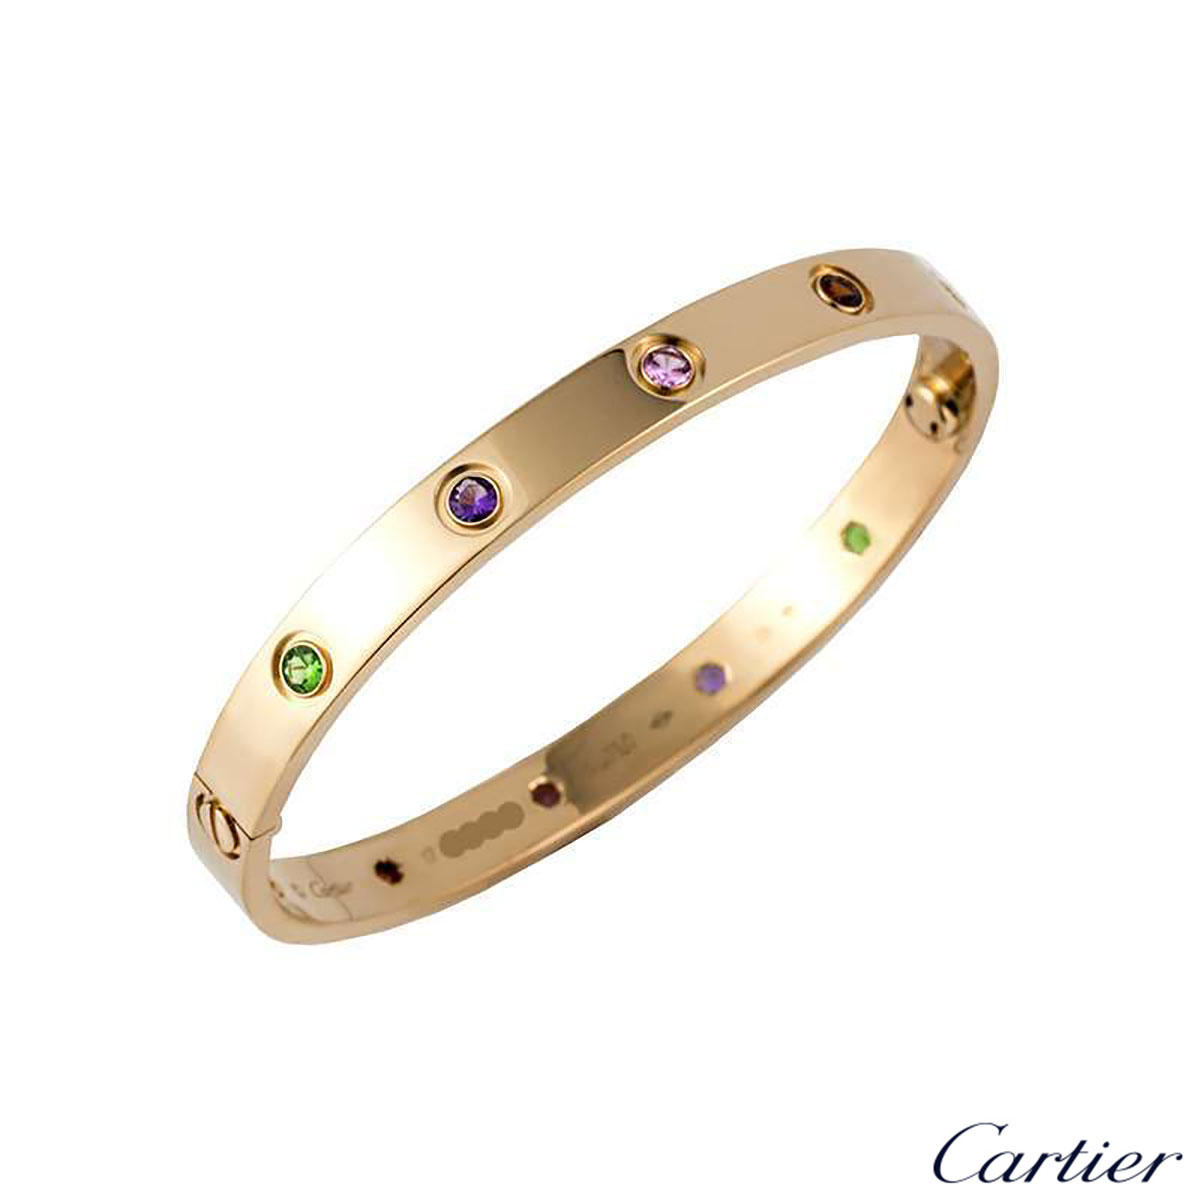 cartier love bracelet colored stones